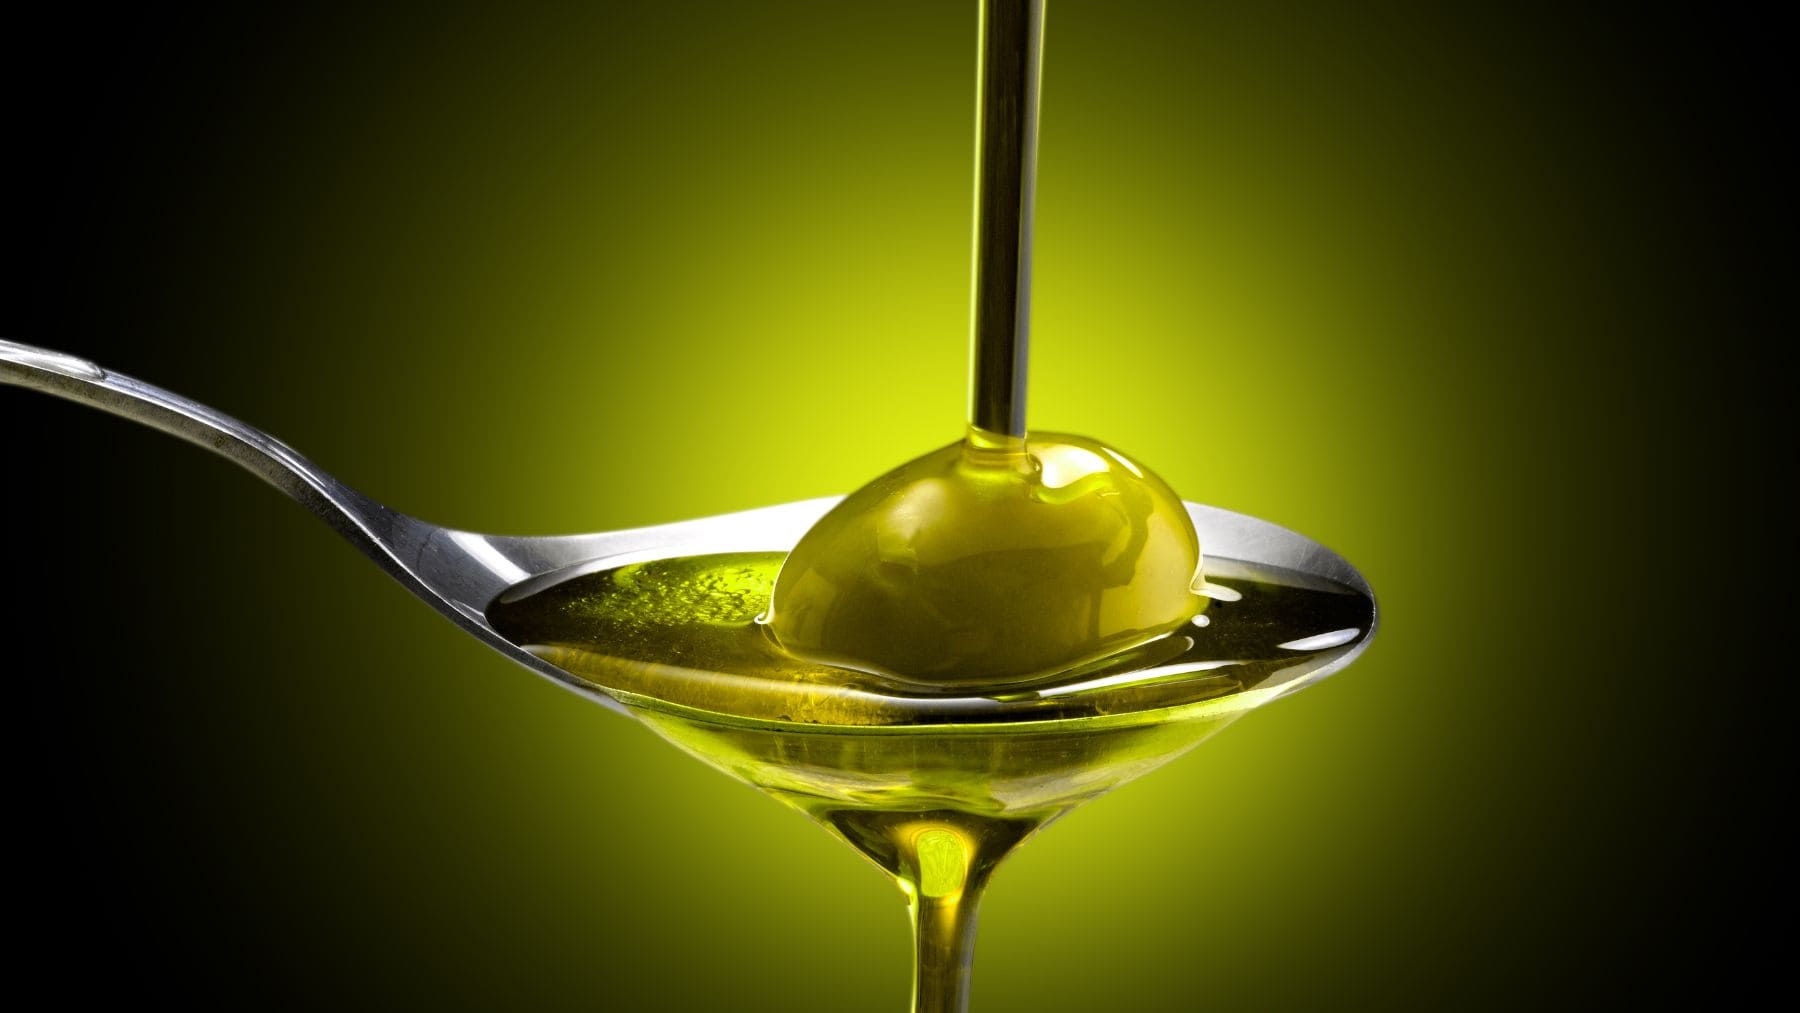 El precio del aceite de oliva es el principal inconveniente para incorporarlo a nuestra dieta de forma regular, hemos encontrado una alternativa igual de saludable y barata